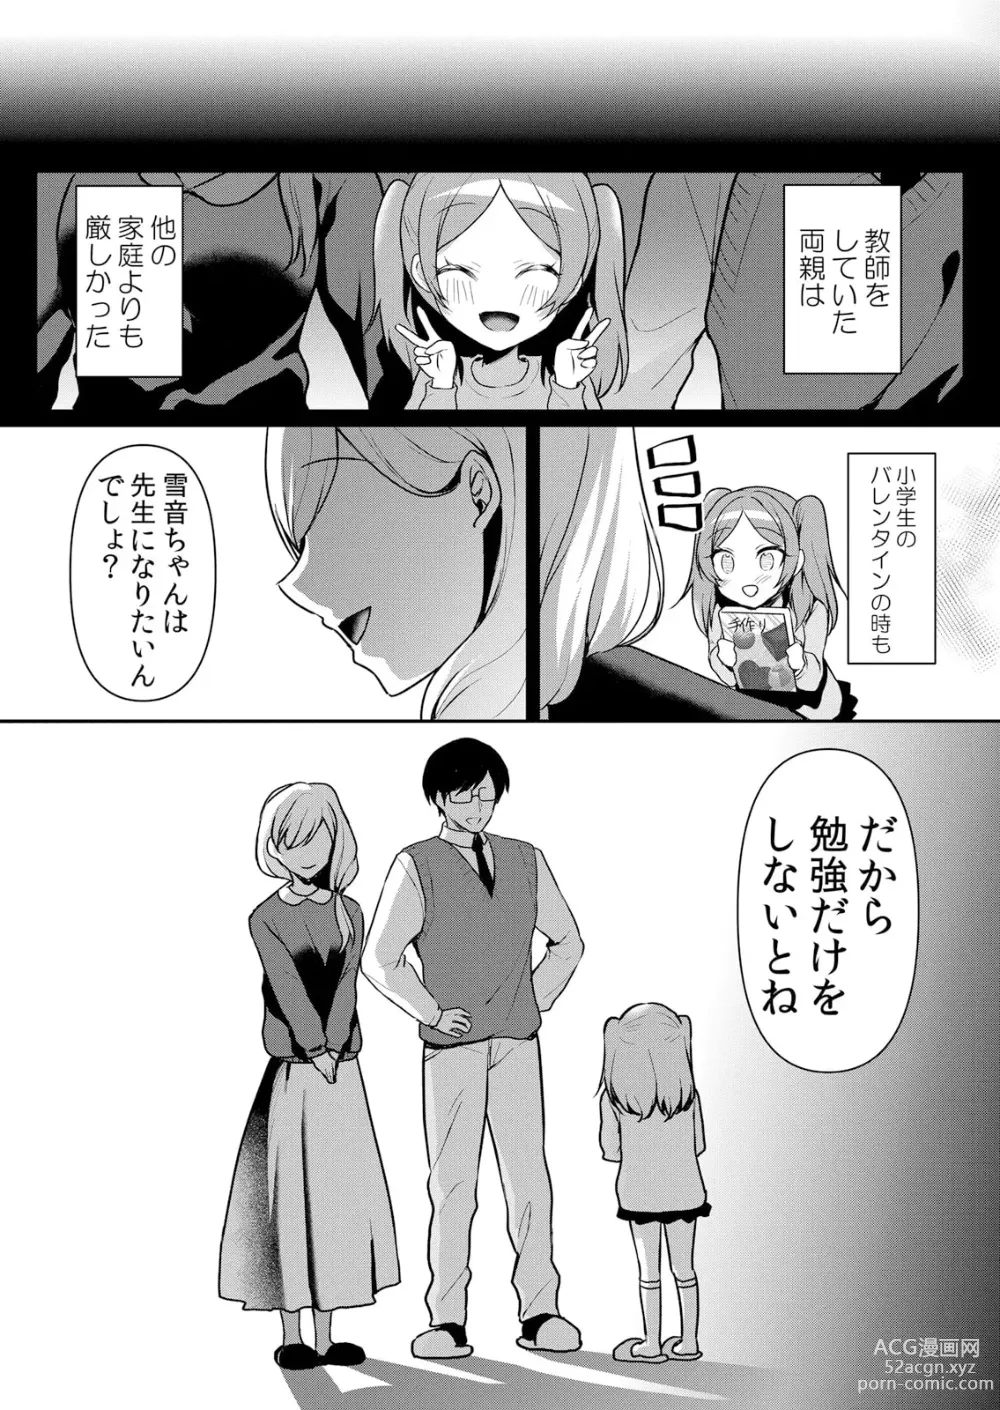 Page 18 of manga 生イキJKに中●し調教～めちゃくちゃに突いて、奥の方に出してあげるね 48話